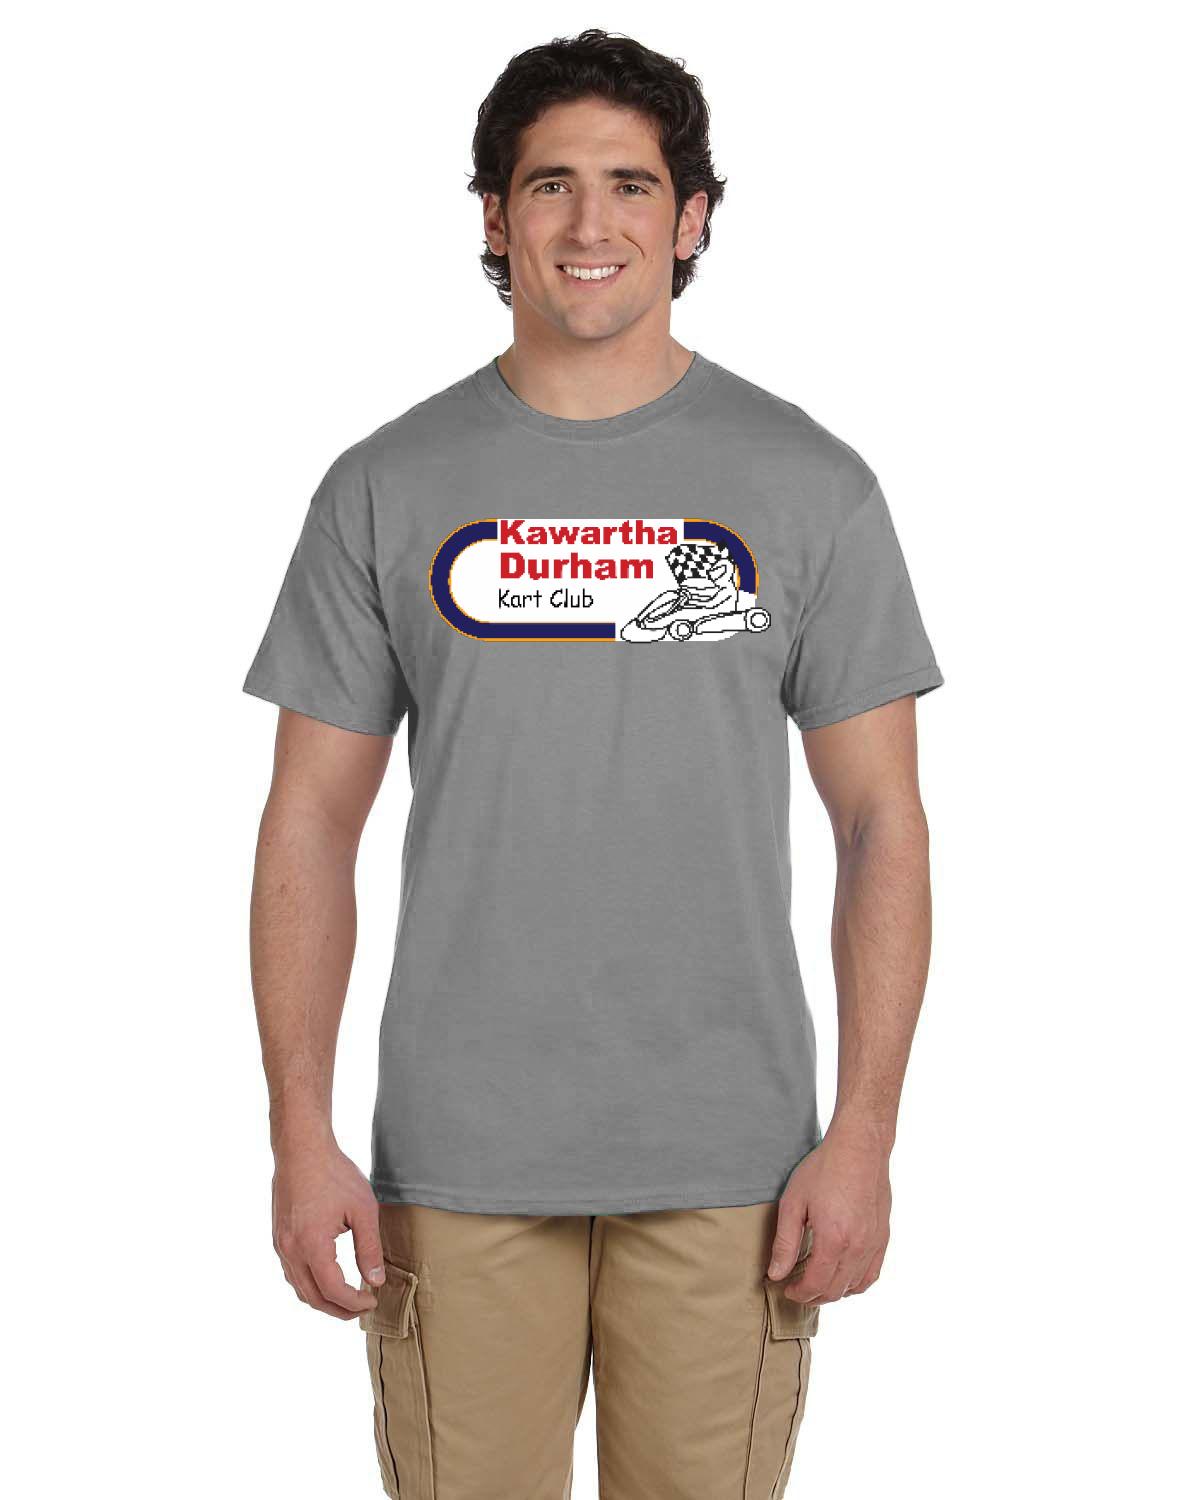 Kawartha Durham Kart Club Men's T-Shirt